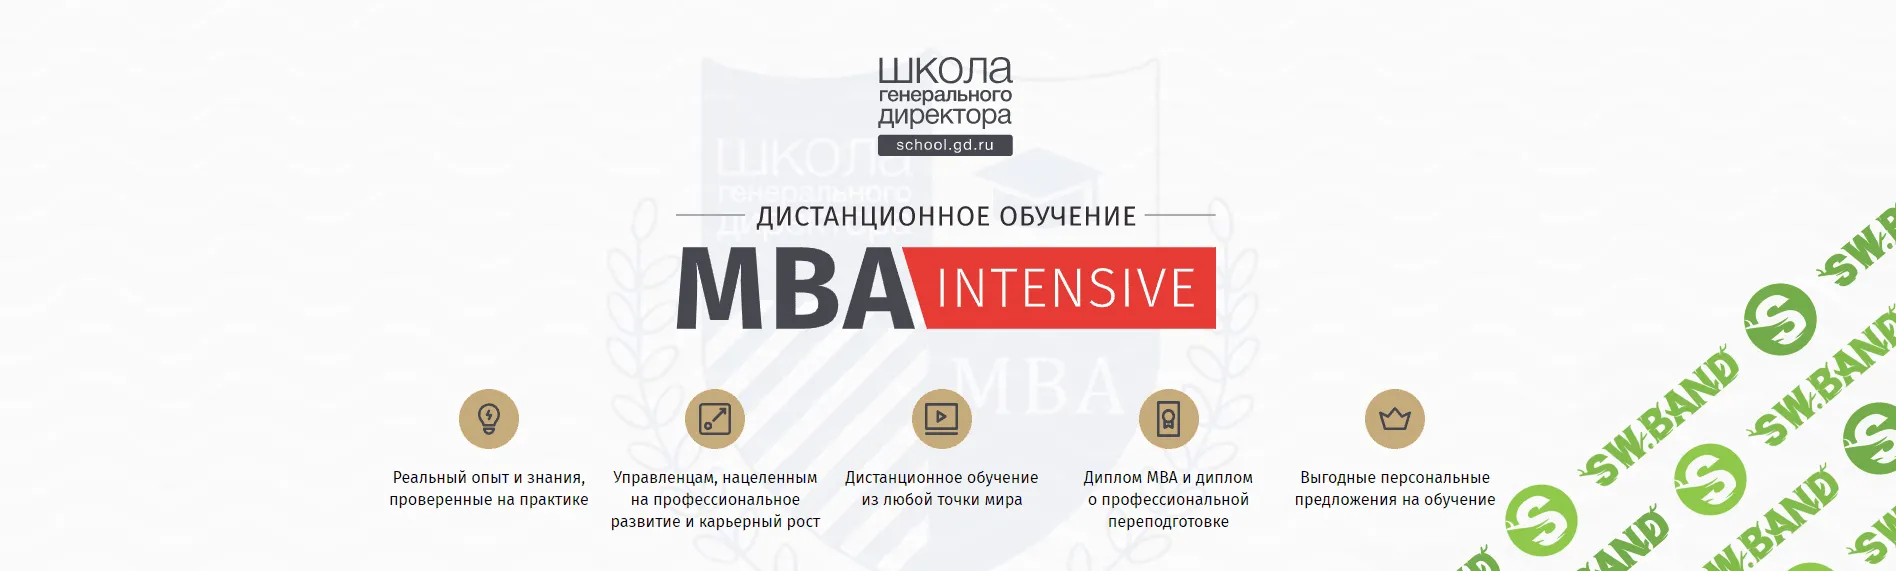 [Школа генерального директора] MBA-Intensive (2020)